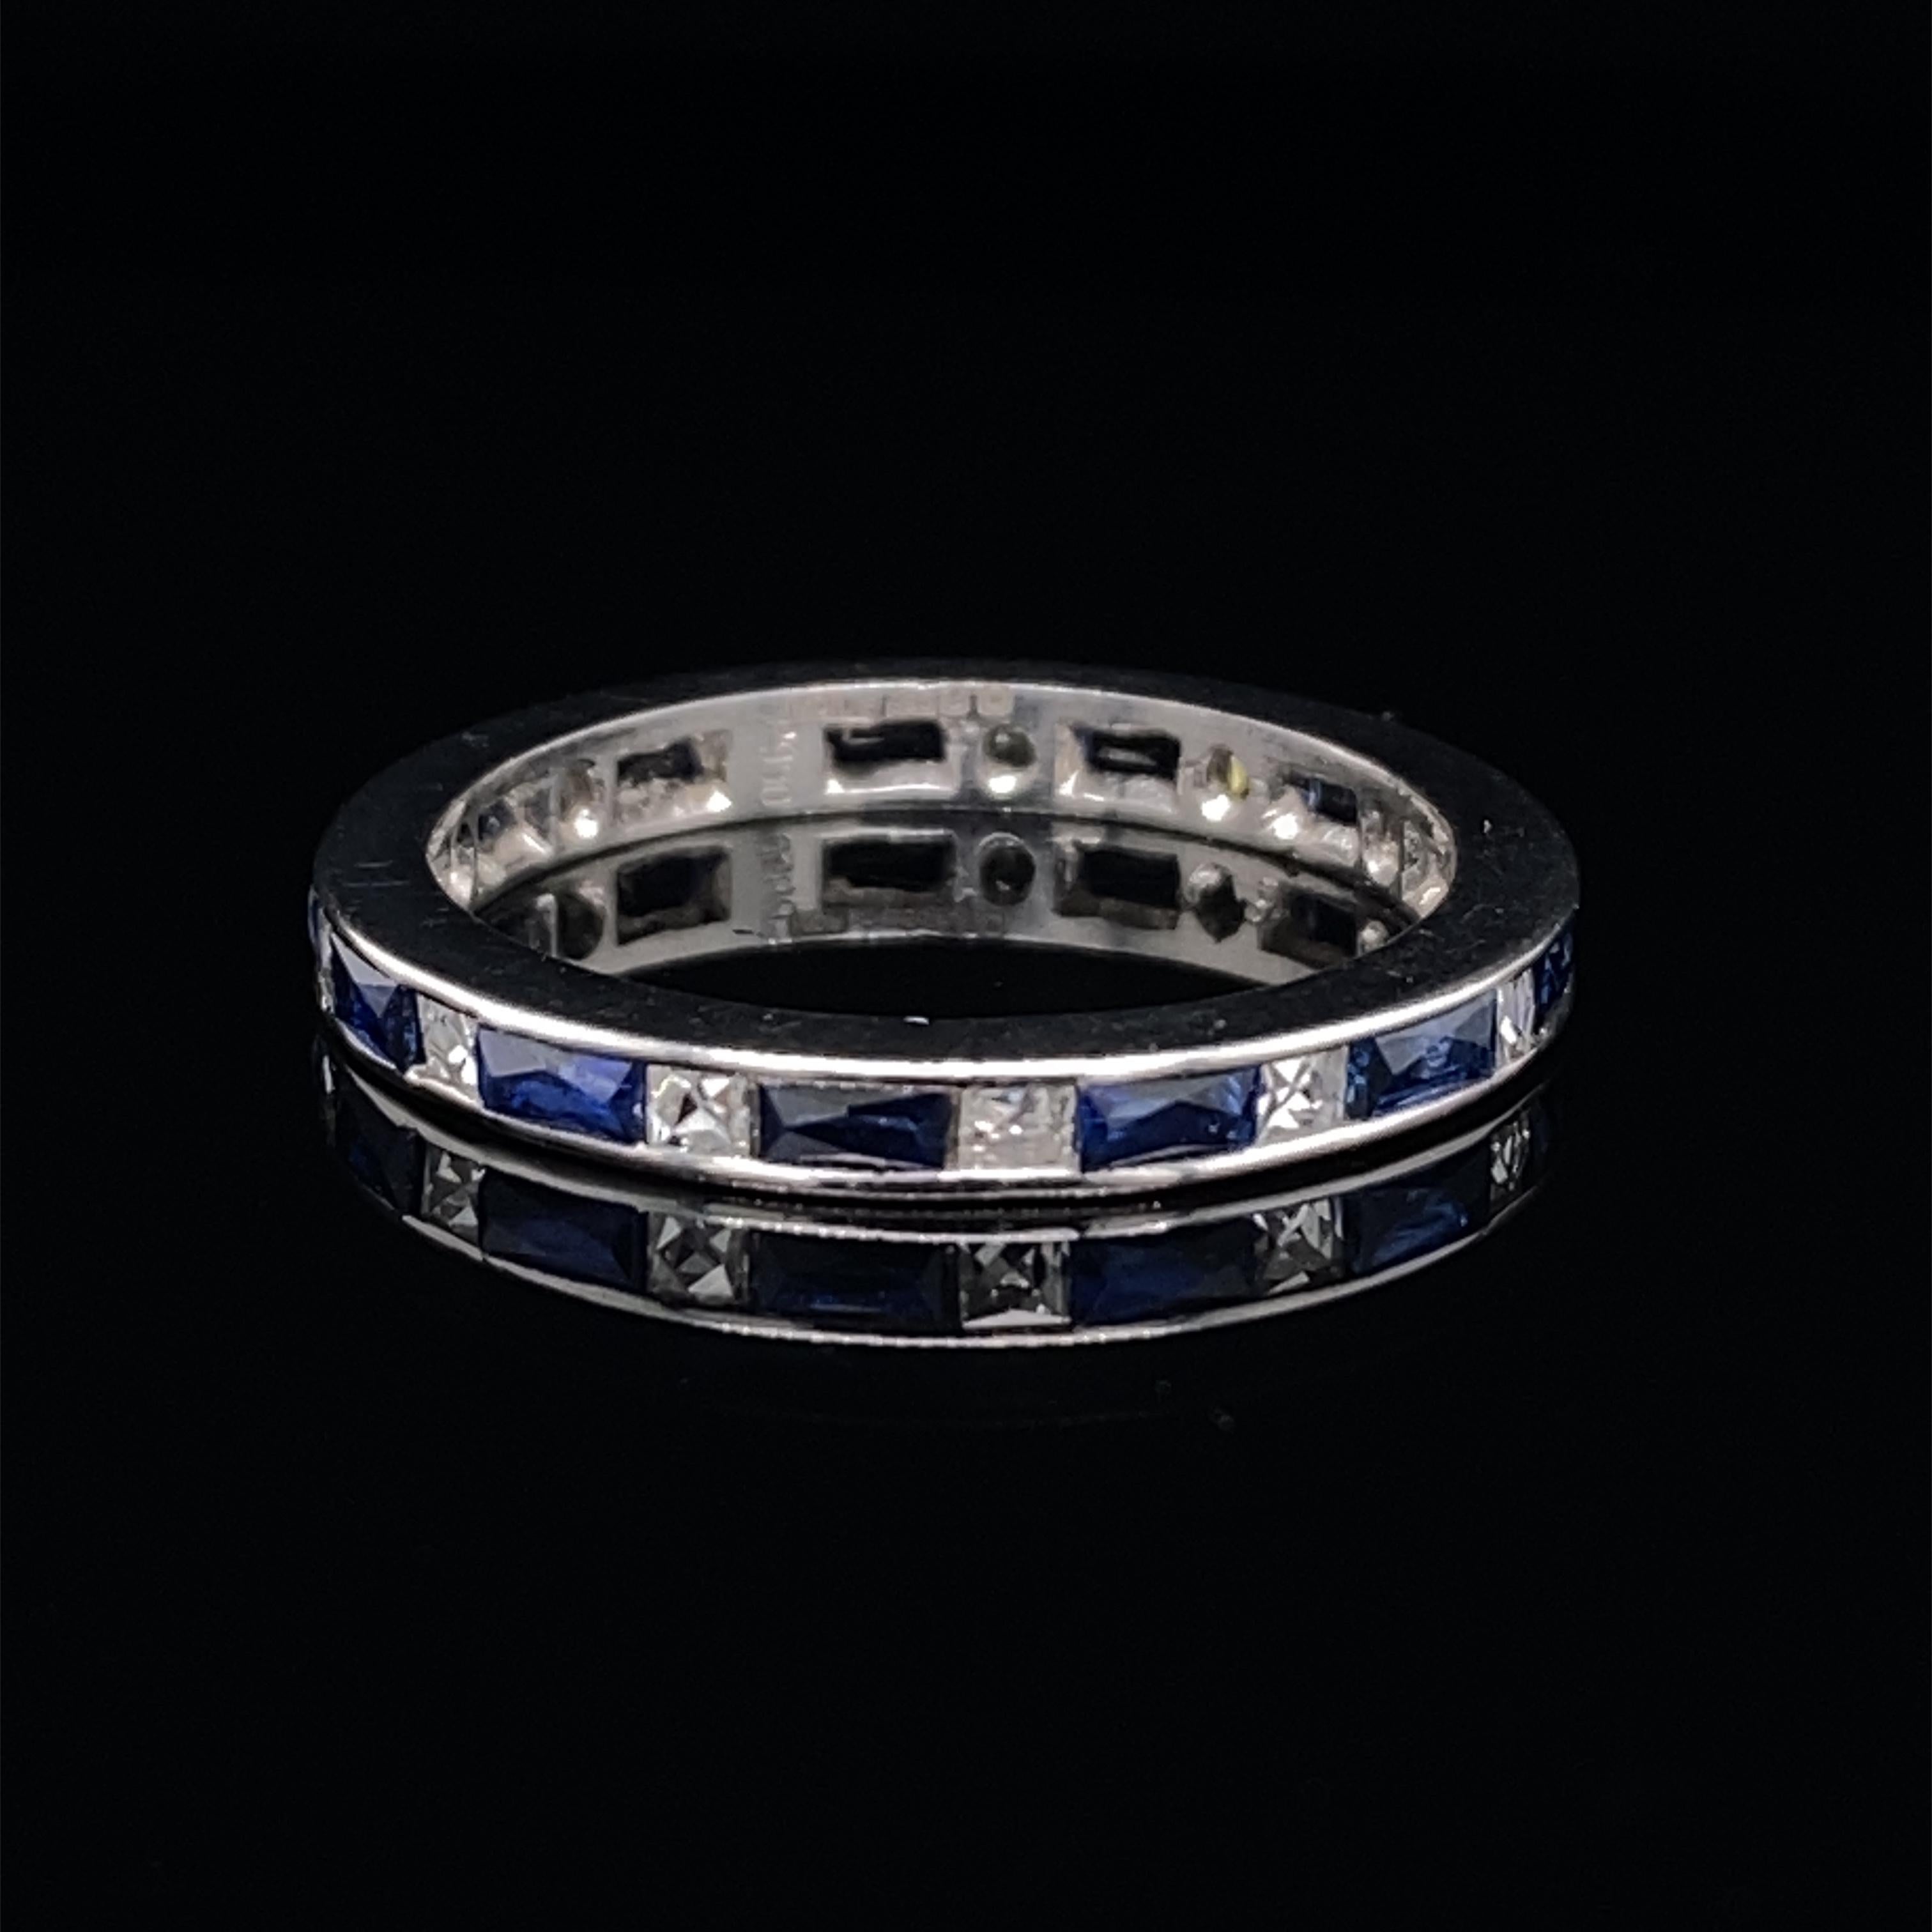 Une bague d'éternité complète en saphir et diamant en platine.

Un magnifique anneau d'éternité complet, serti d'une seule rangée de diamants de taille française et de saphirs de taille baguette alternés, les diamants sont de couleur et de clarté